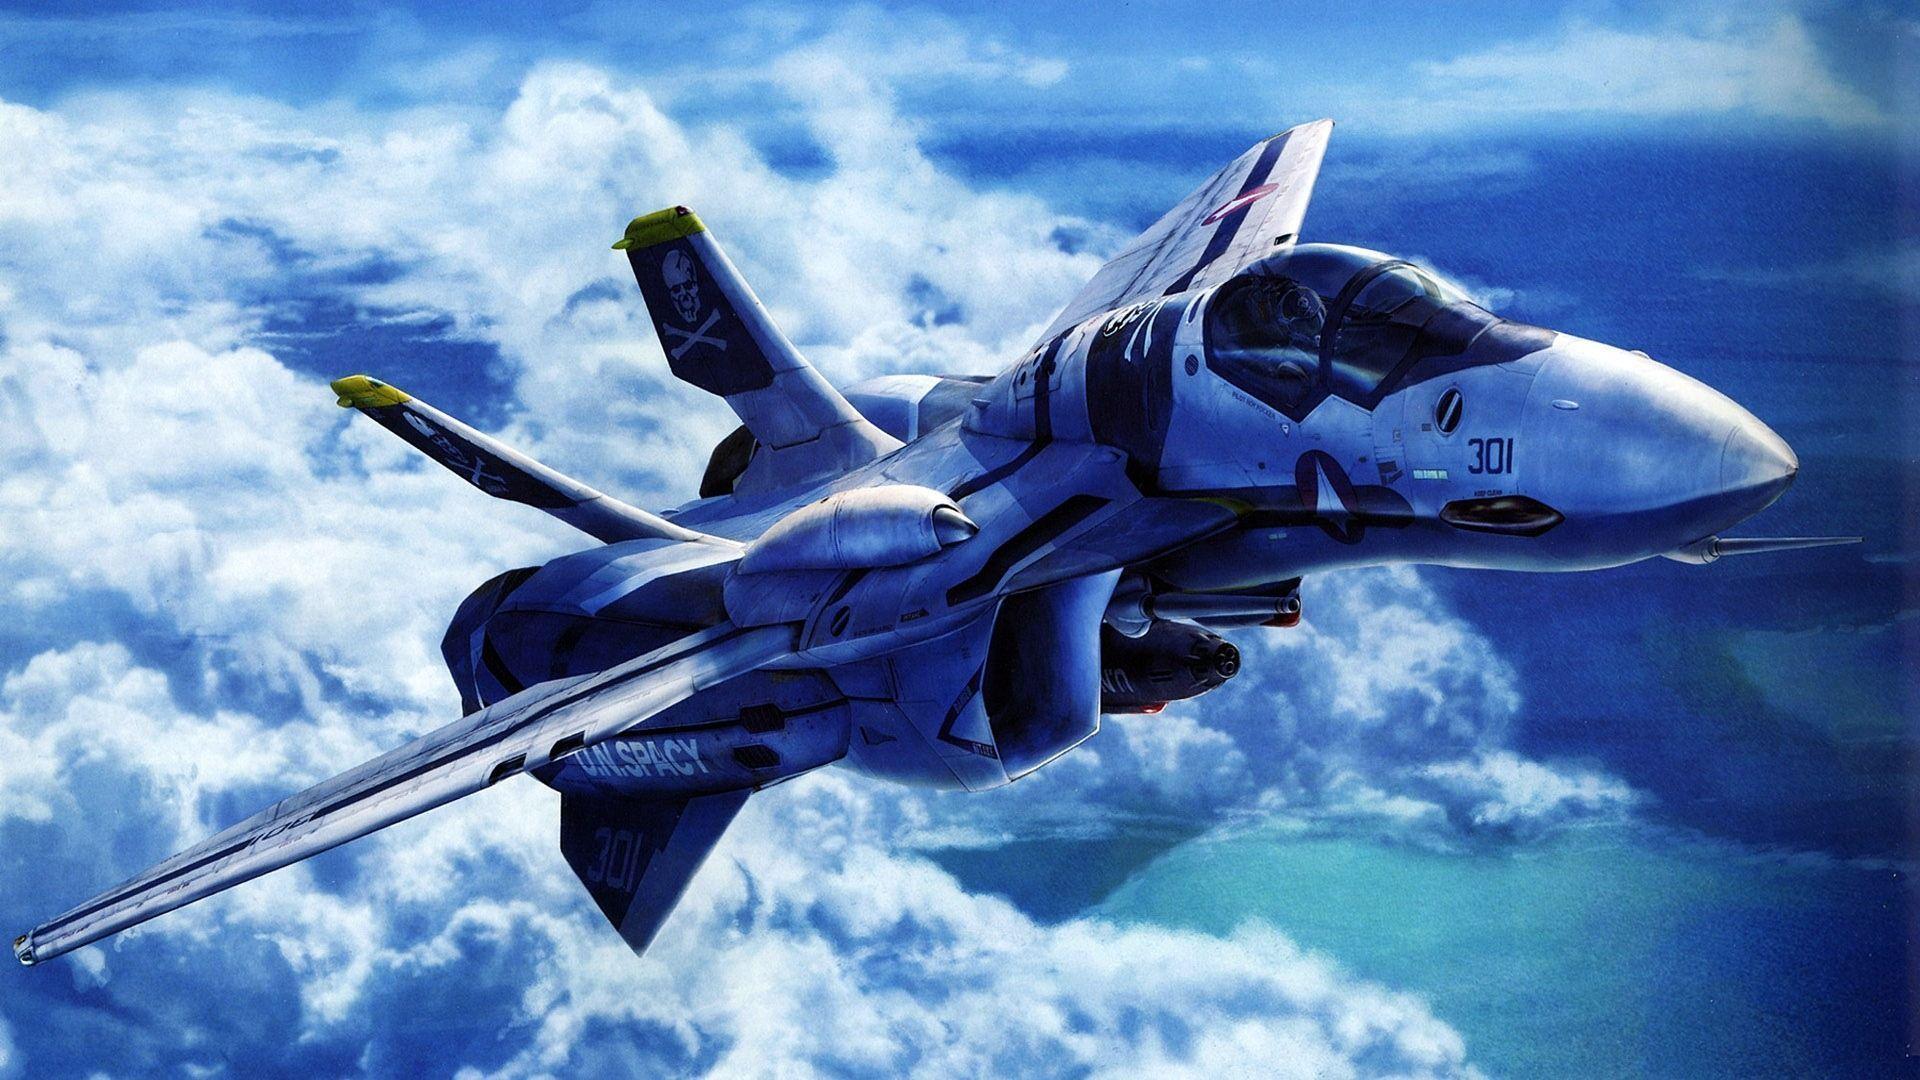 Amazing Fighter Aircraft Wallpaper Deskrop Wallpaper. High